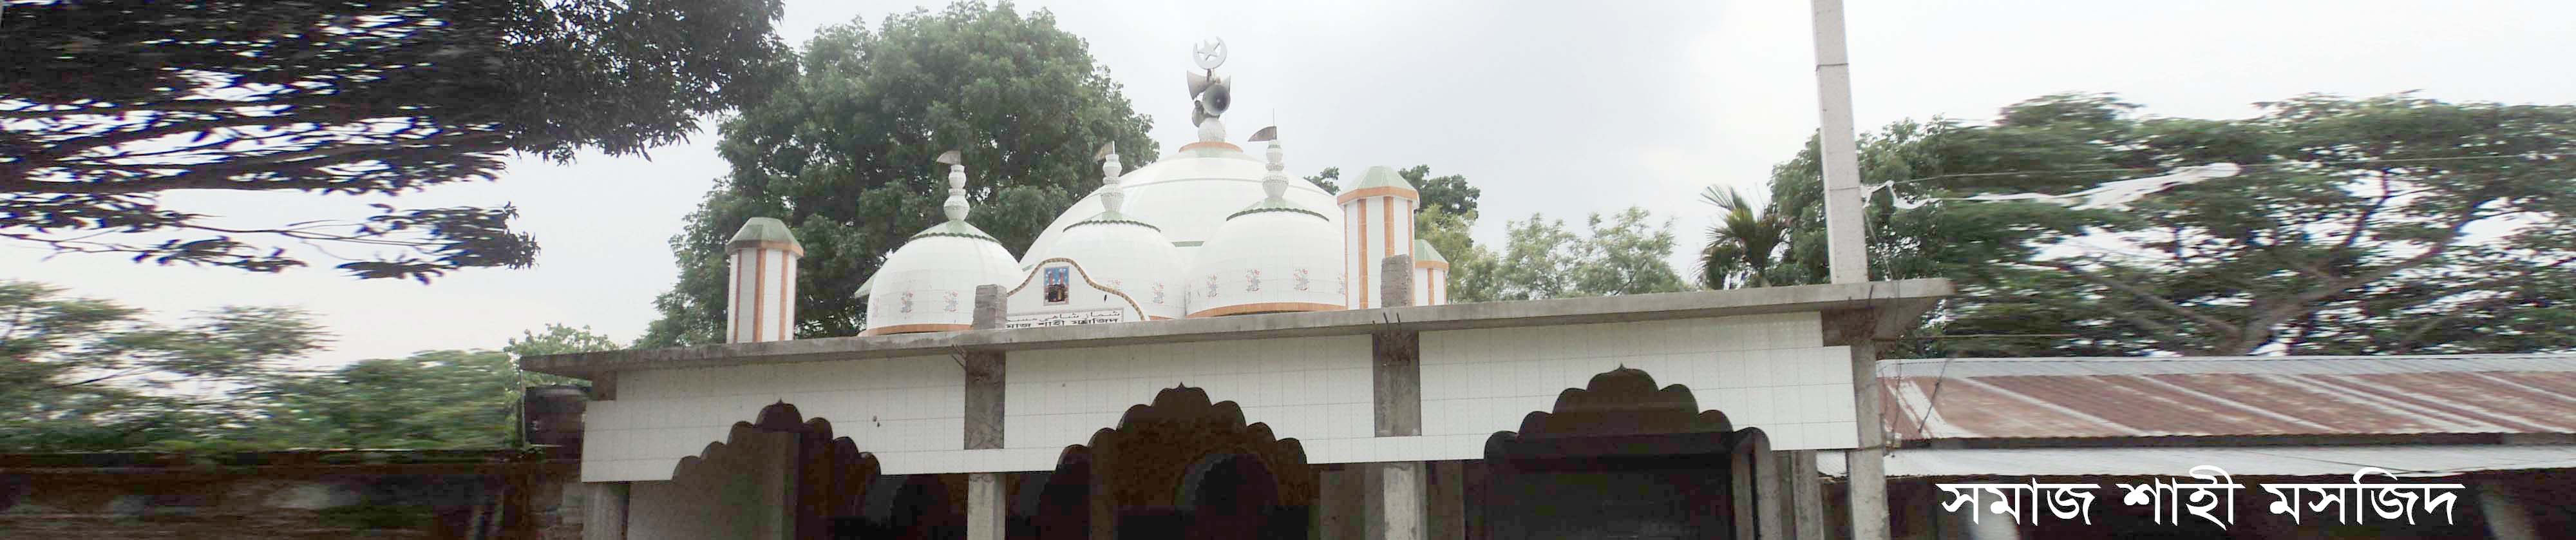 Society Shahi Mosque